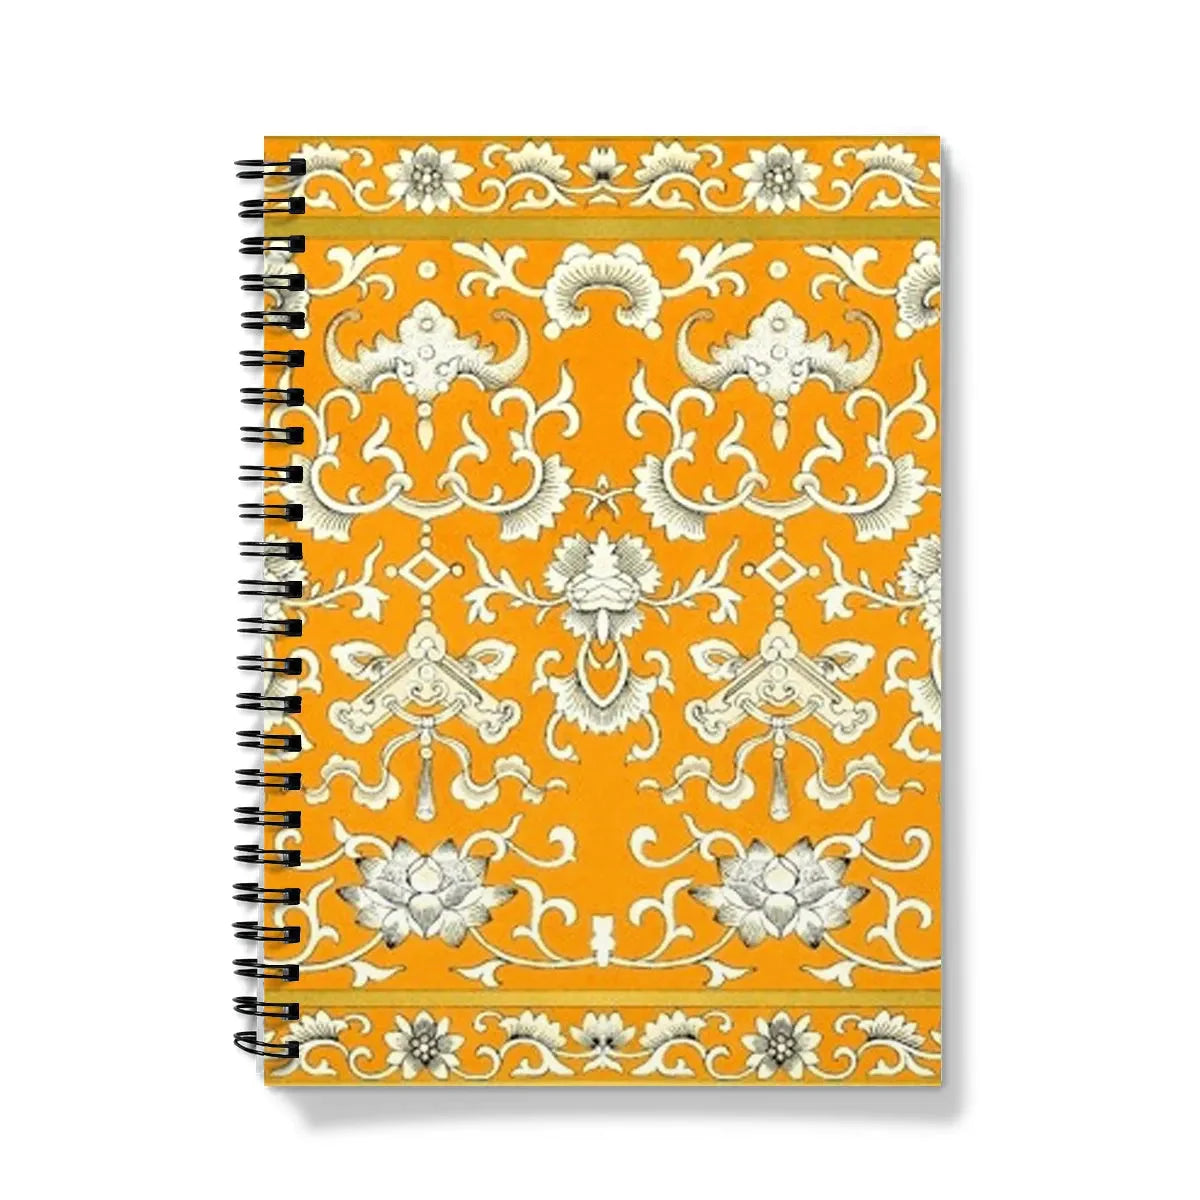 Tangerine Dream Notebook - A5 - Graph Paper - Notebooks & Notepads - Aesthetic Art